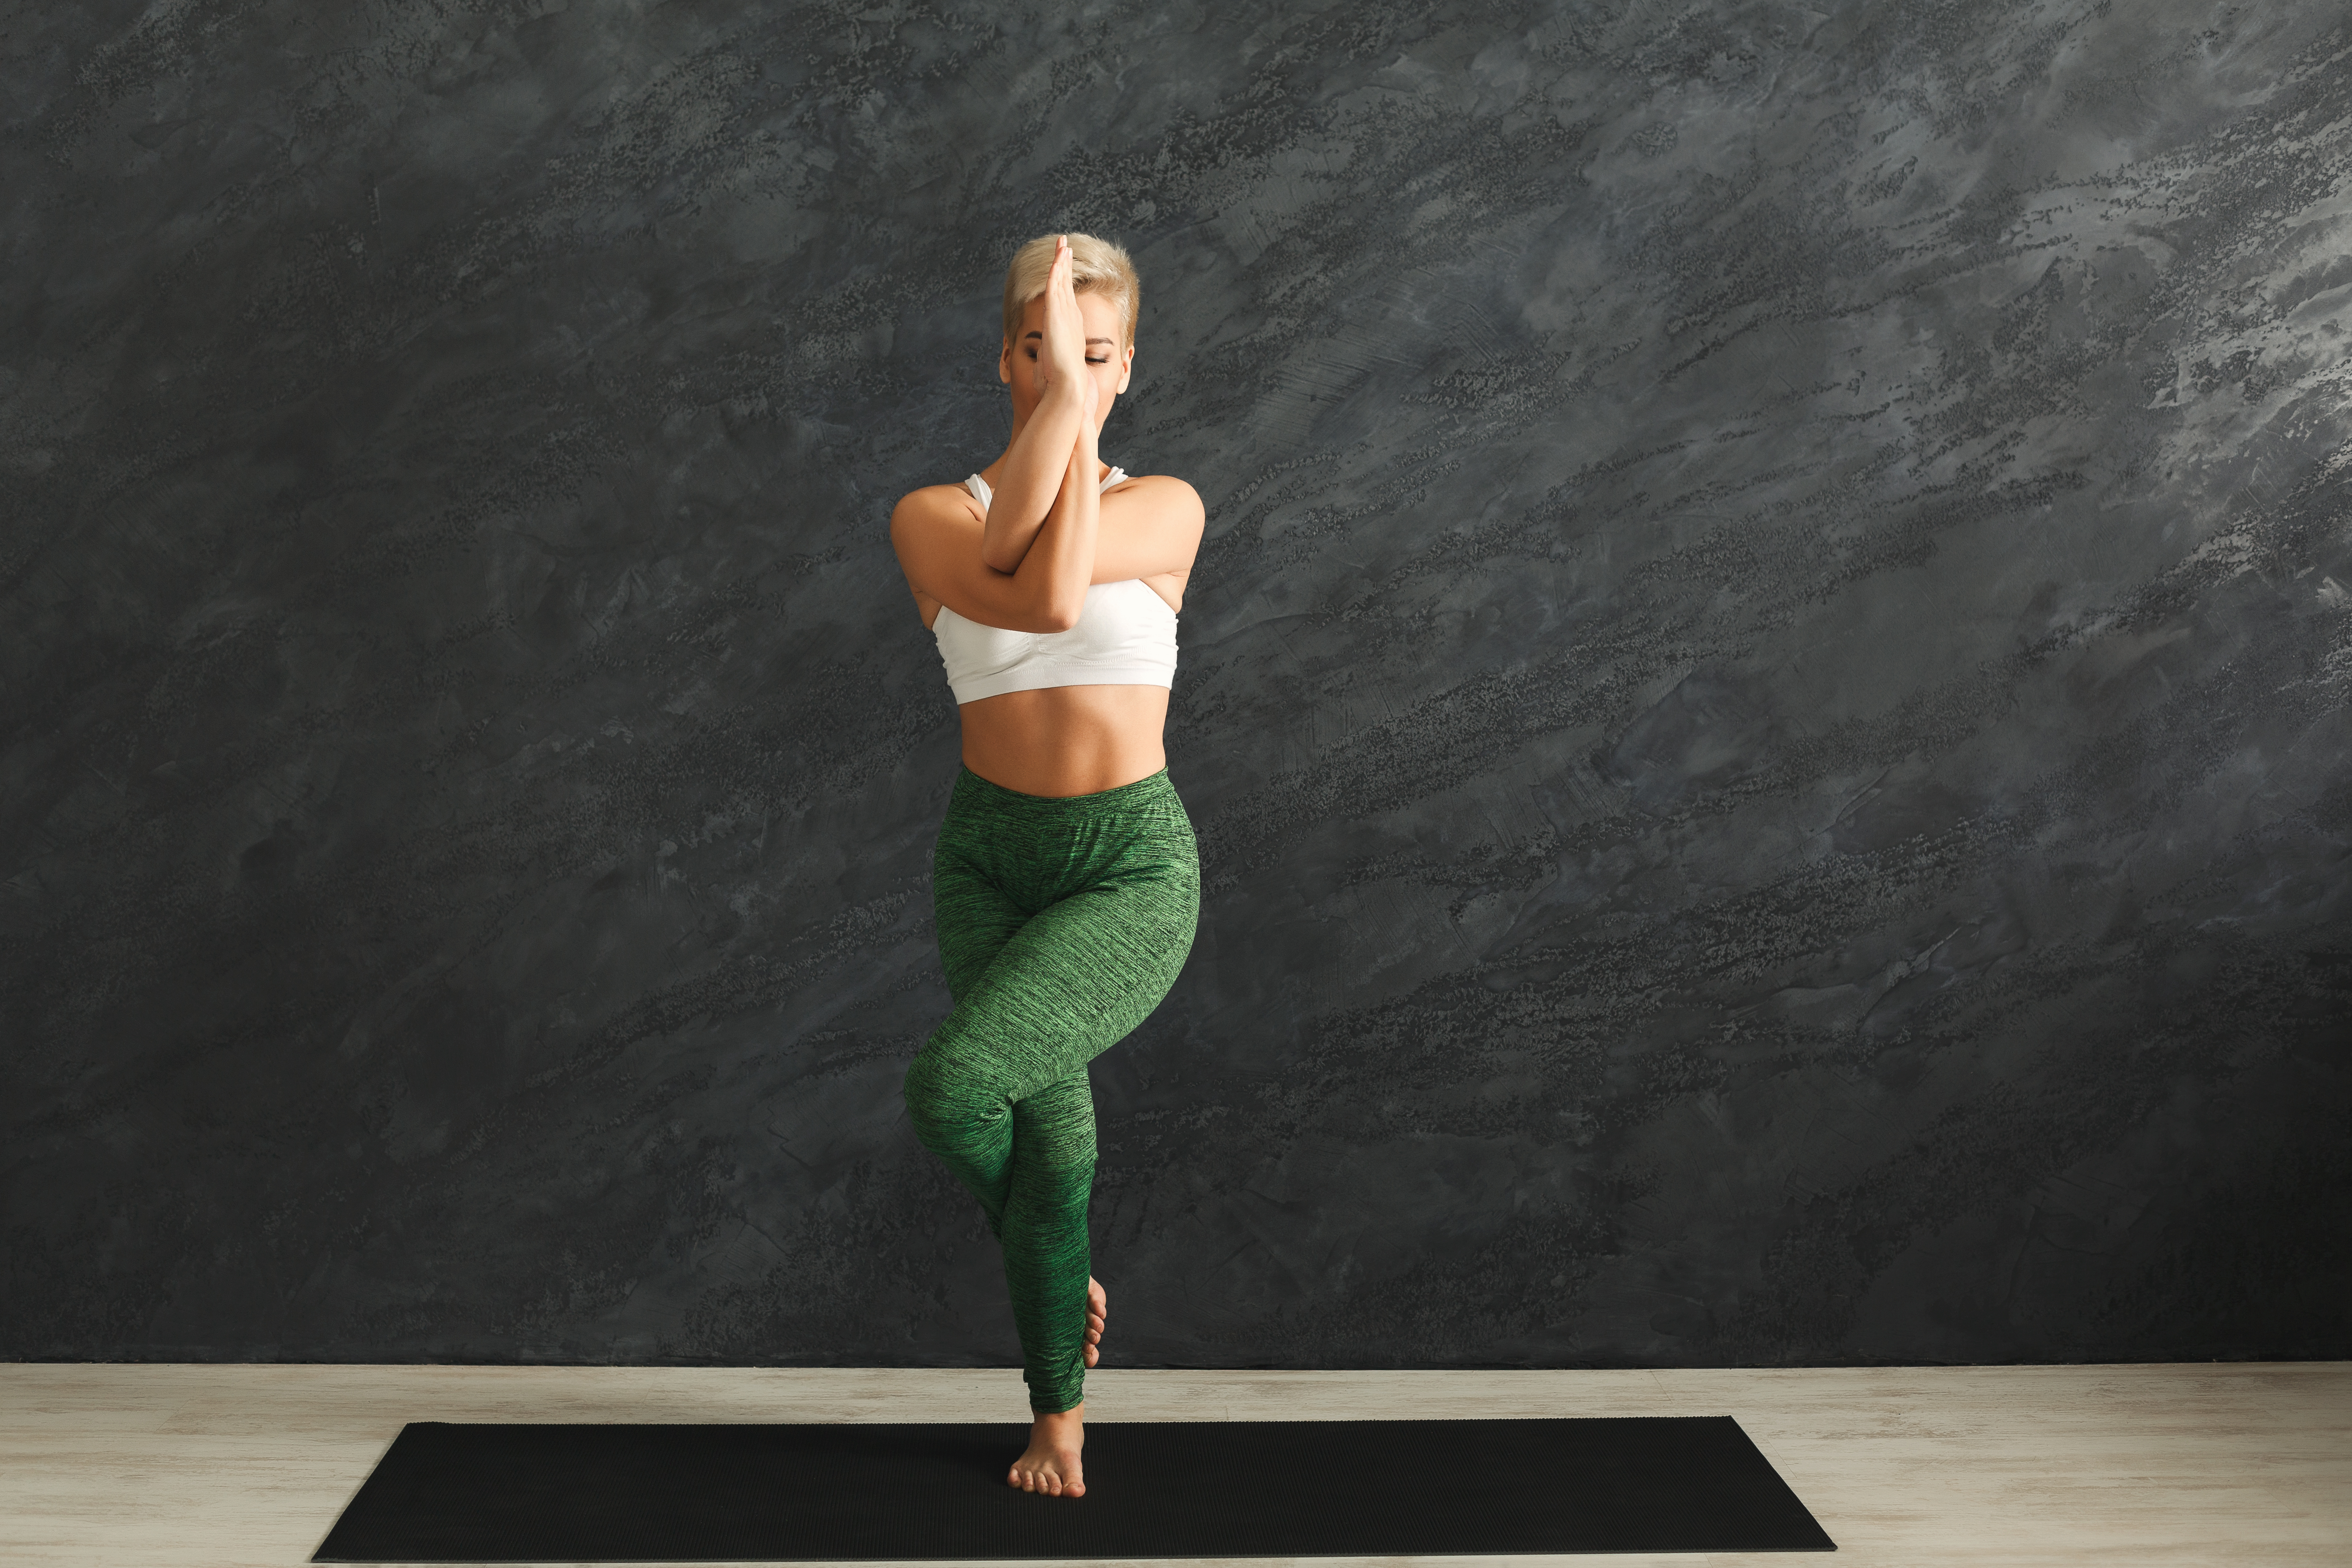 Fitness, Frau trainiert Power Yoga in Adlerpose im Fitnessstudio vor grauem Hintergrund, Kopierraum. Junges schlankes Mädchen macht Sport.